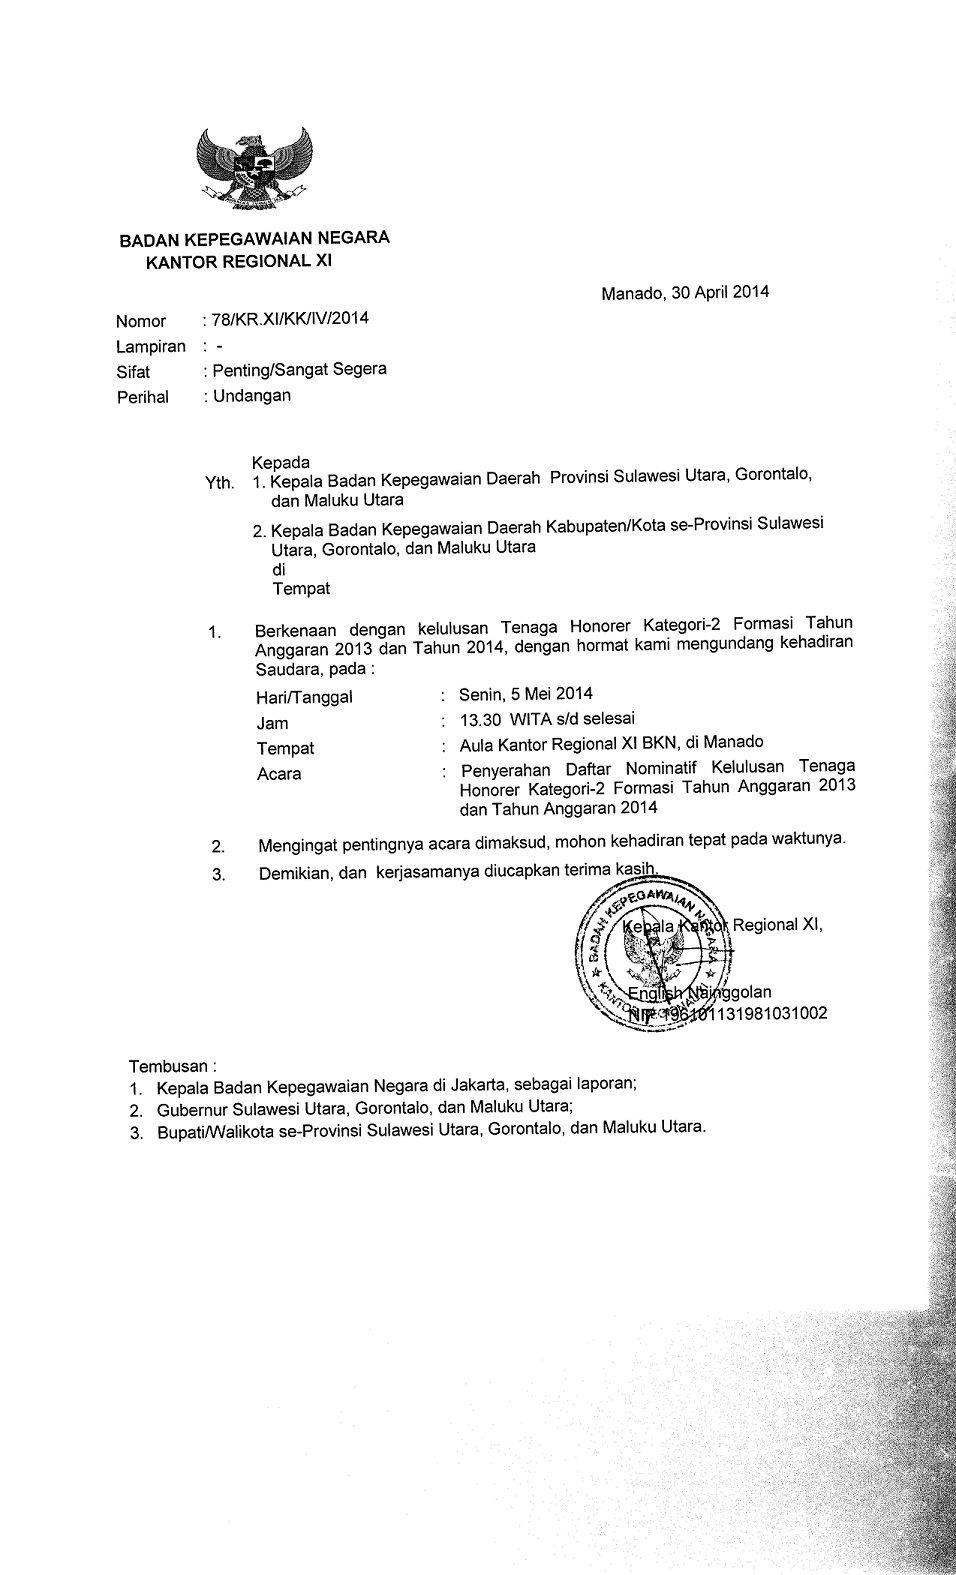 Surat undangan Penyerahan Daftar Nominatif TH K2 Formasi 